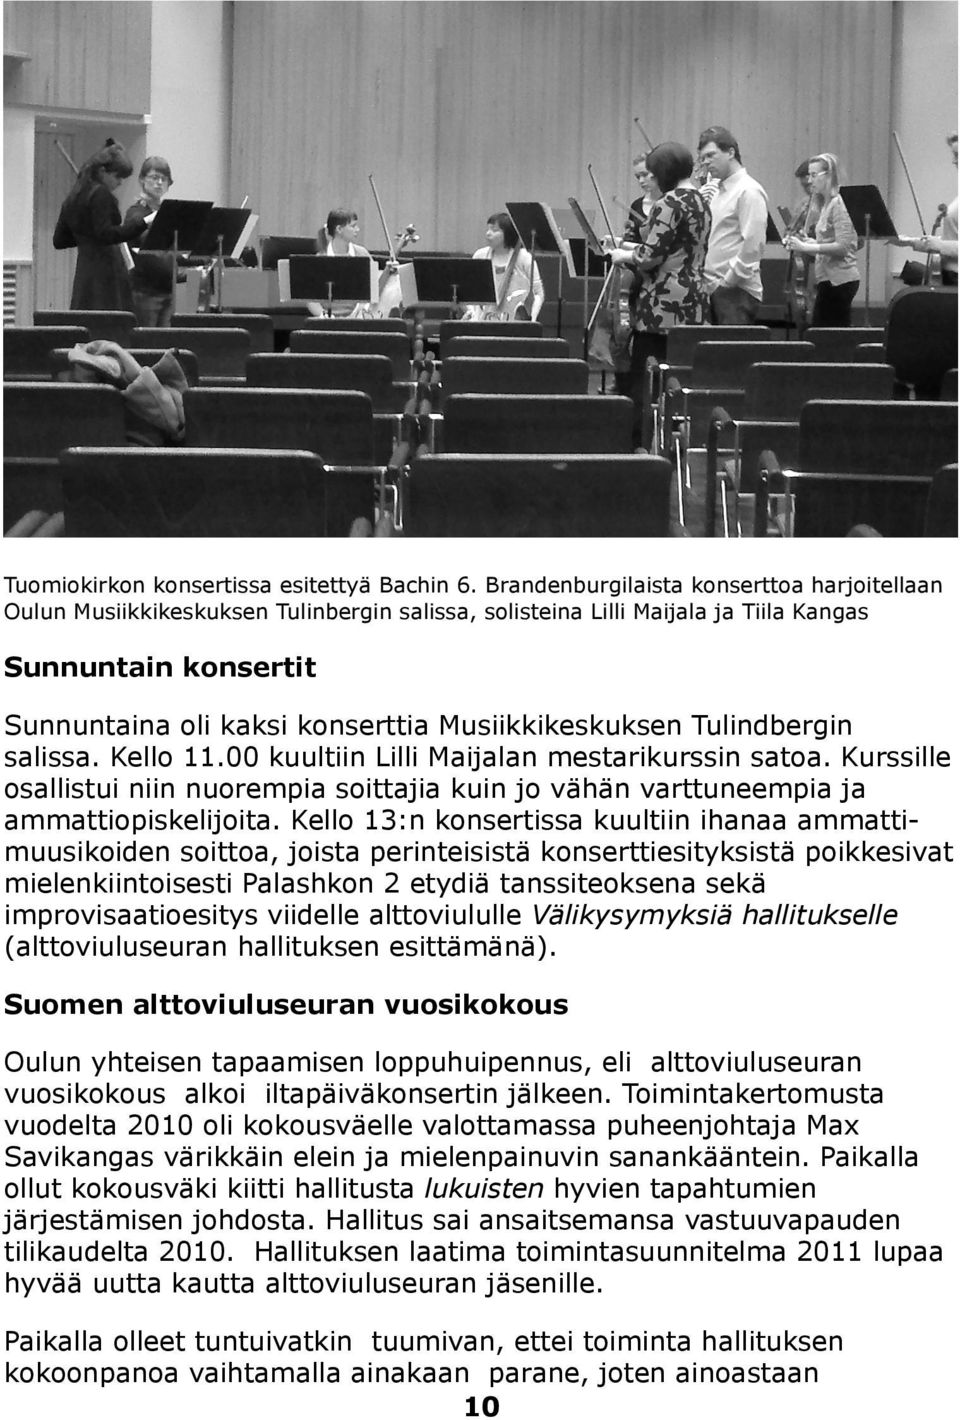 Musiikkikeskuksen Tulindbergin salissa. Kello 11.00 kuultiin Lilli Maijalan mestarikurssin satoa. Kurssille osallistui niin nuorempia soittajia kuin jo vähän varttuneempia ja ammattiopiskelijoita.